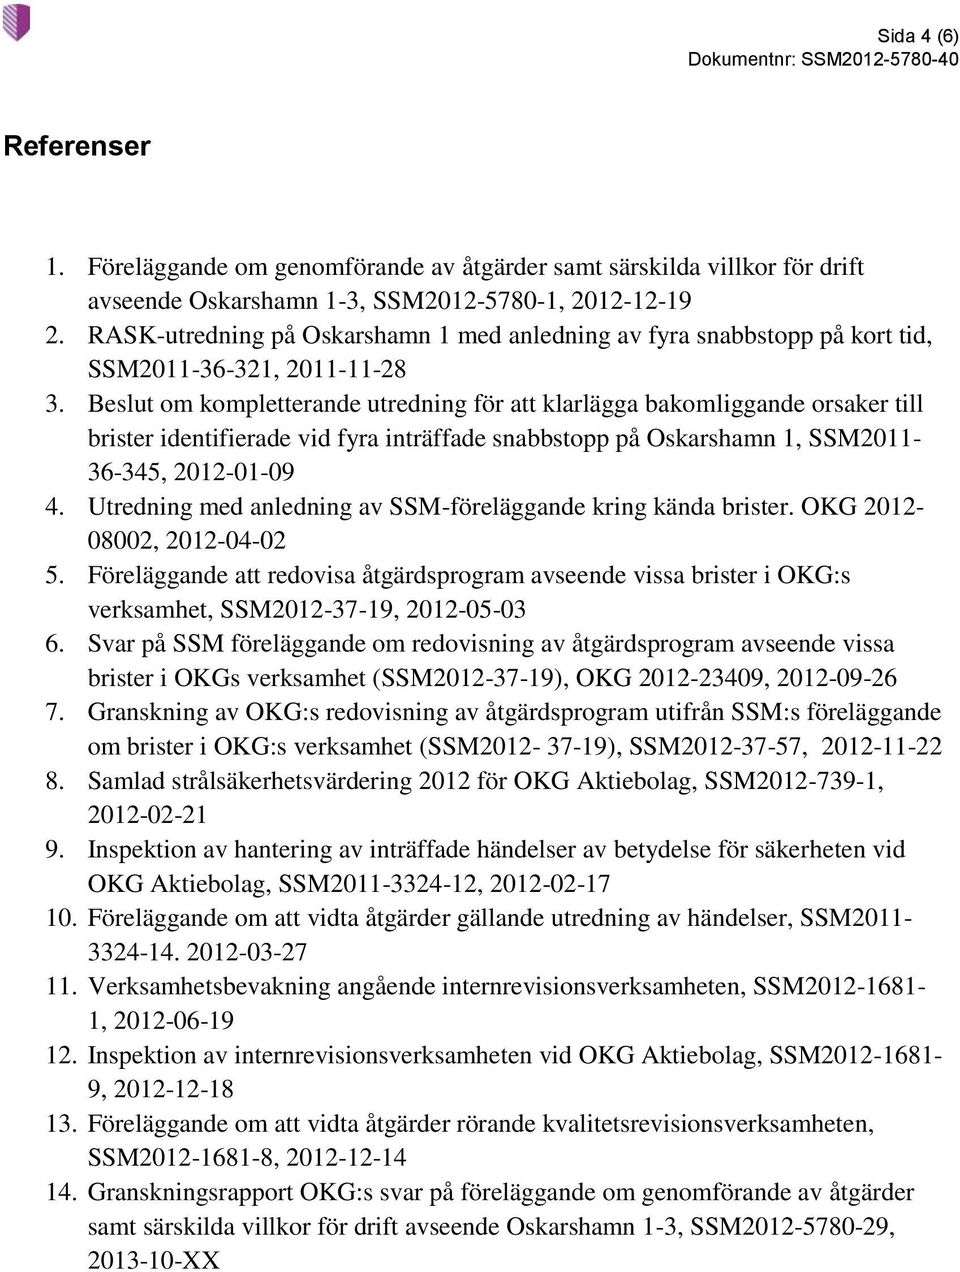 Beslut om kompletterande utredning för att klarlägga bakomliggande orsaker till brister identifierade vid fyra inträffade snabbstopp på Oskarshamn 1, SSM2011-36-345, 2012-01-09 4.